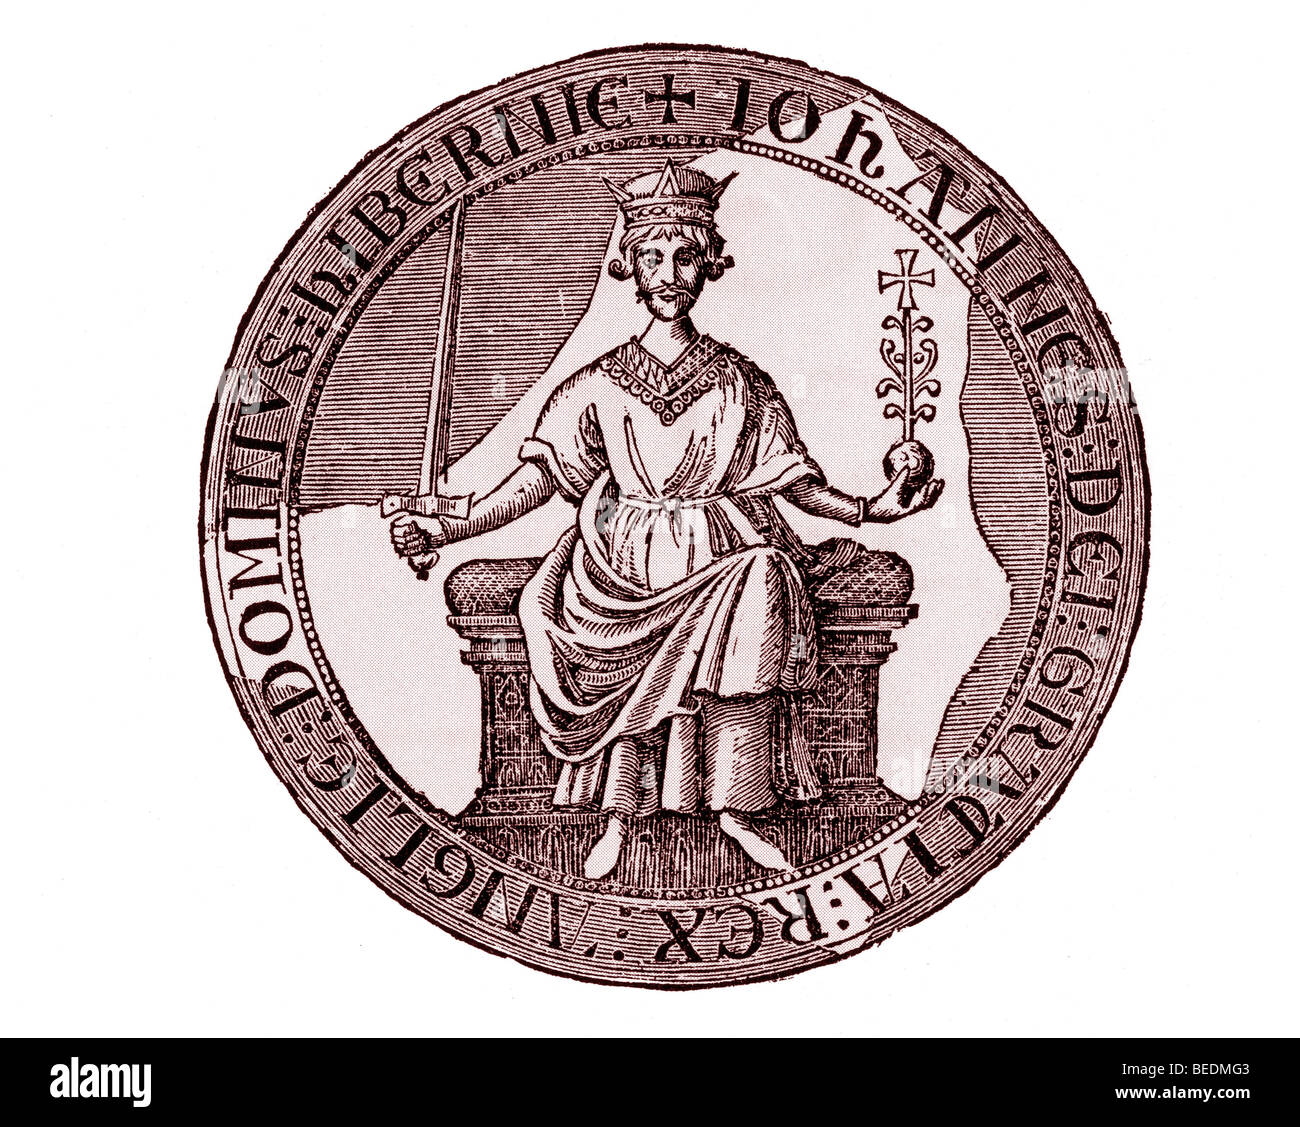 El rey Juan el sello real como fijo en la Carta Magna Foto de stock